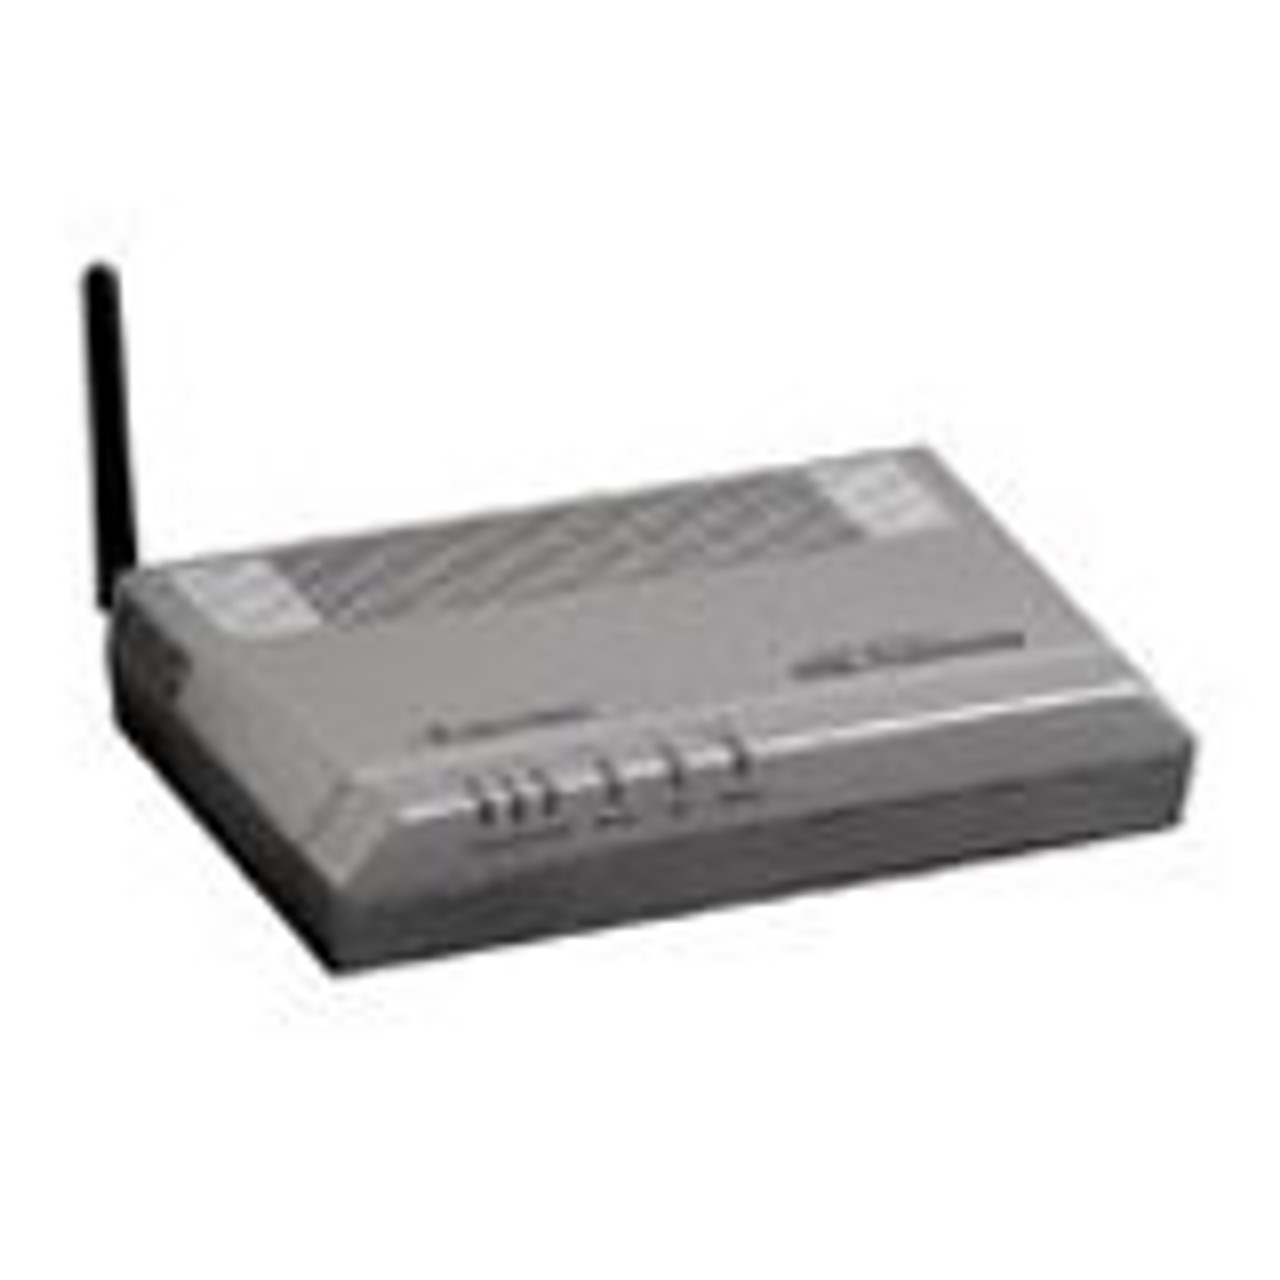 GS503AD3A-01 Actiontec DSL Gateway 1 x ADSL WAN, 4 x 10/100Base-TX LAN, 1 x USB (Refurbished)